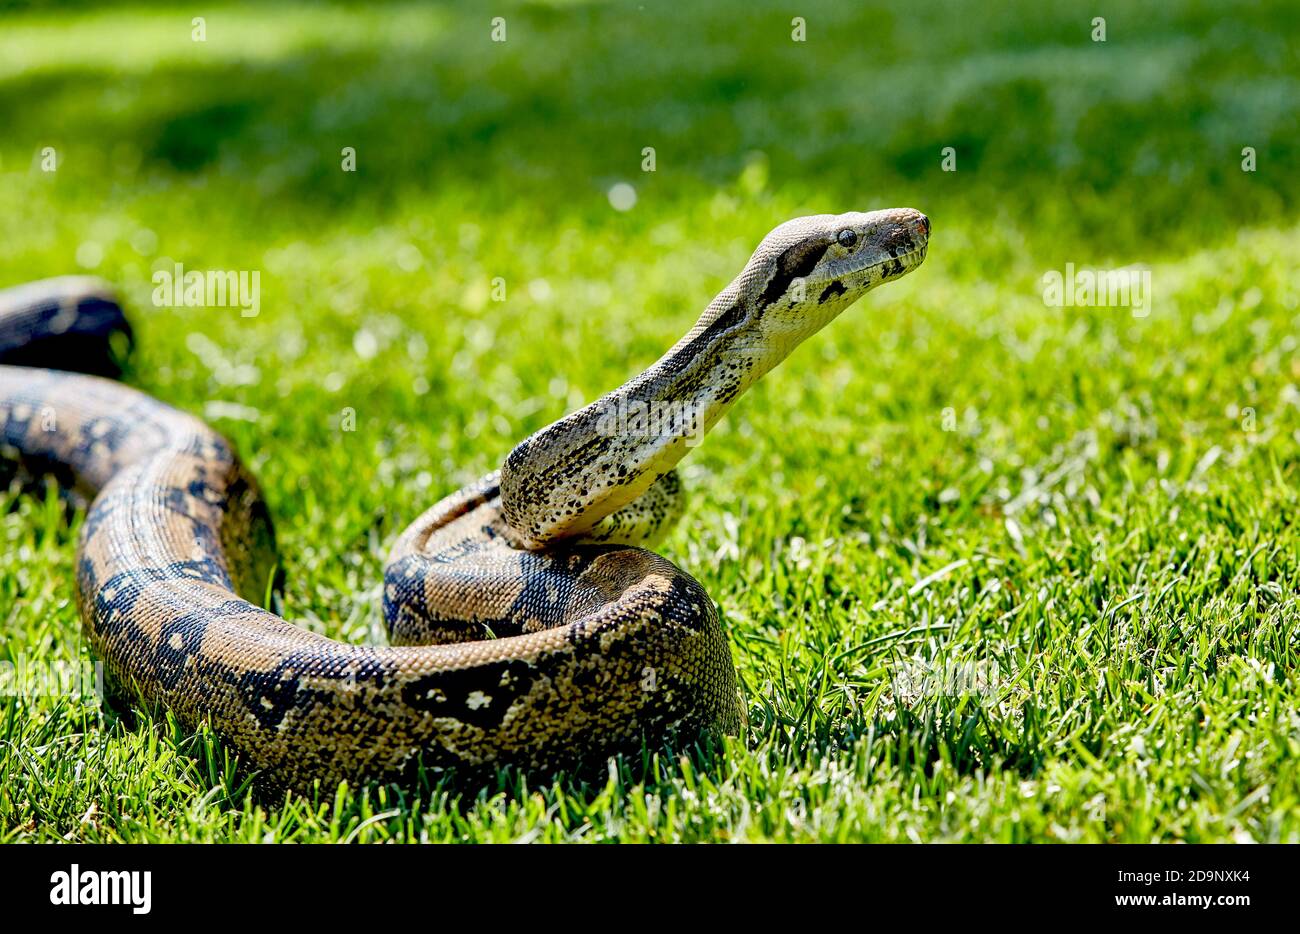 Gros plan de la tête du boa constricteur non venimeux serpent dans l'herbe Banque D'Images